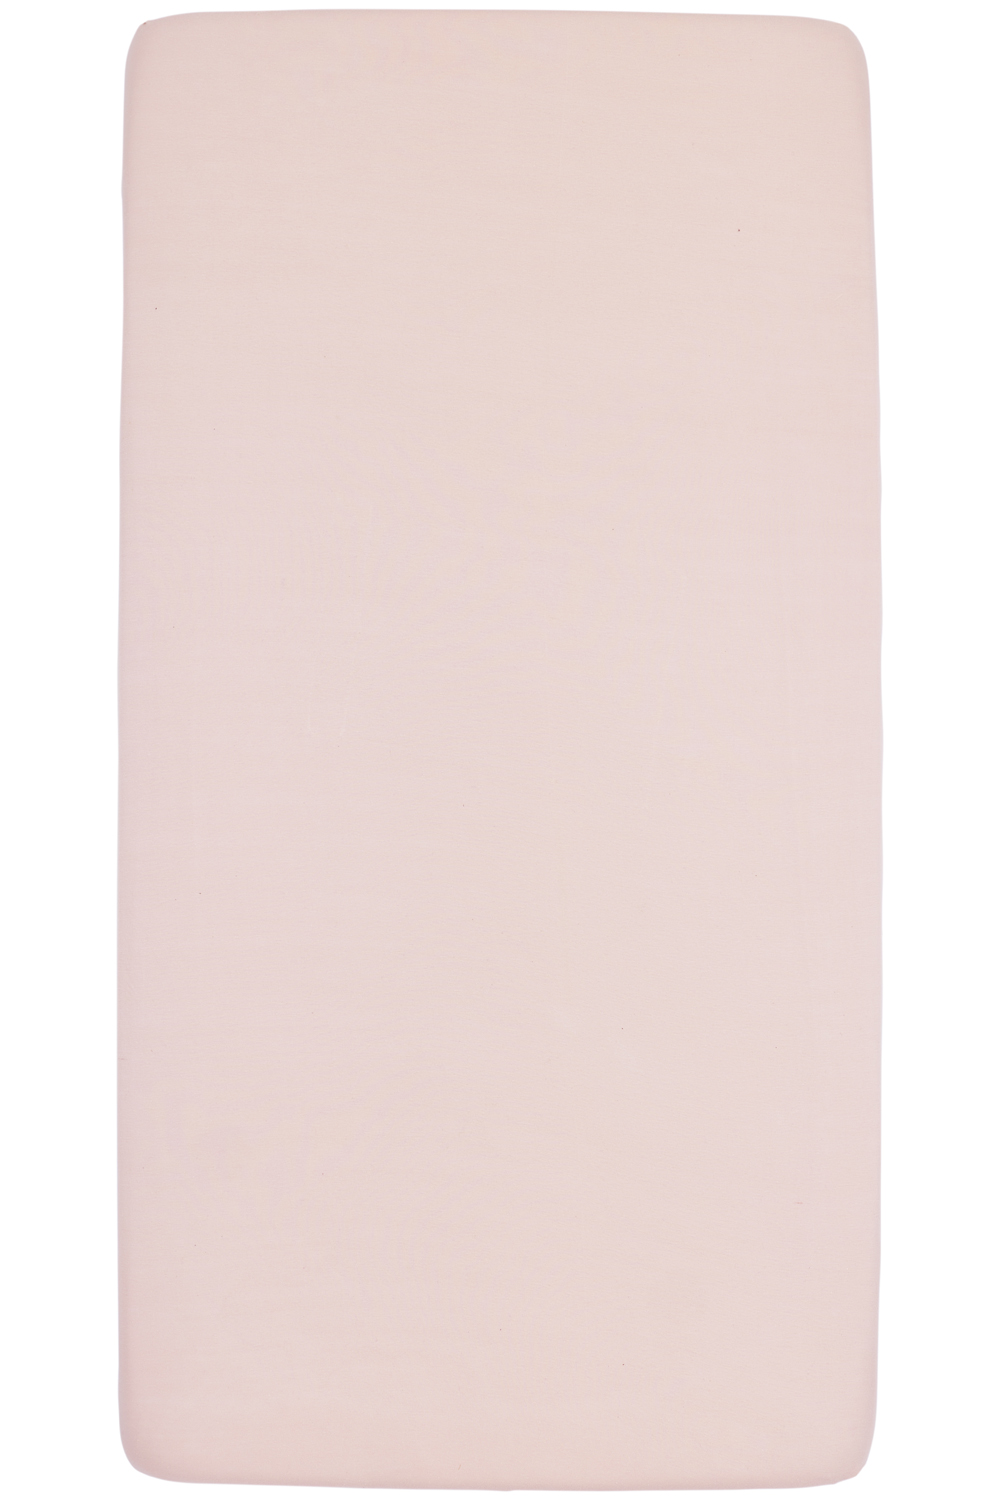 Spannbettlaken Wiege Uni - soft pink - 40x80/90cm